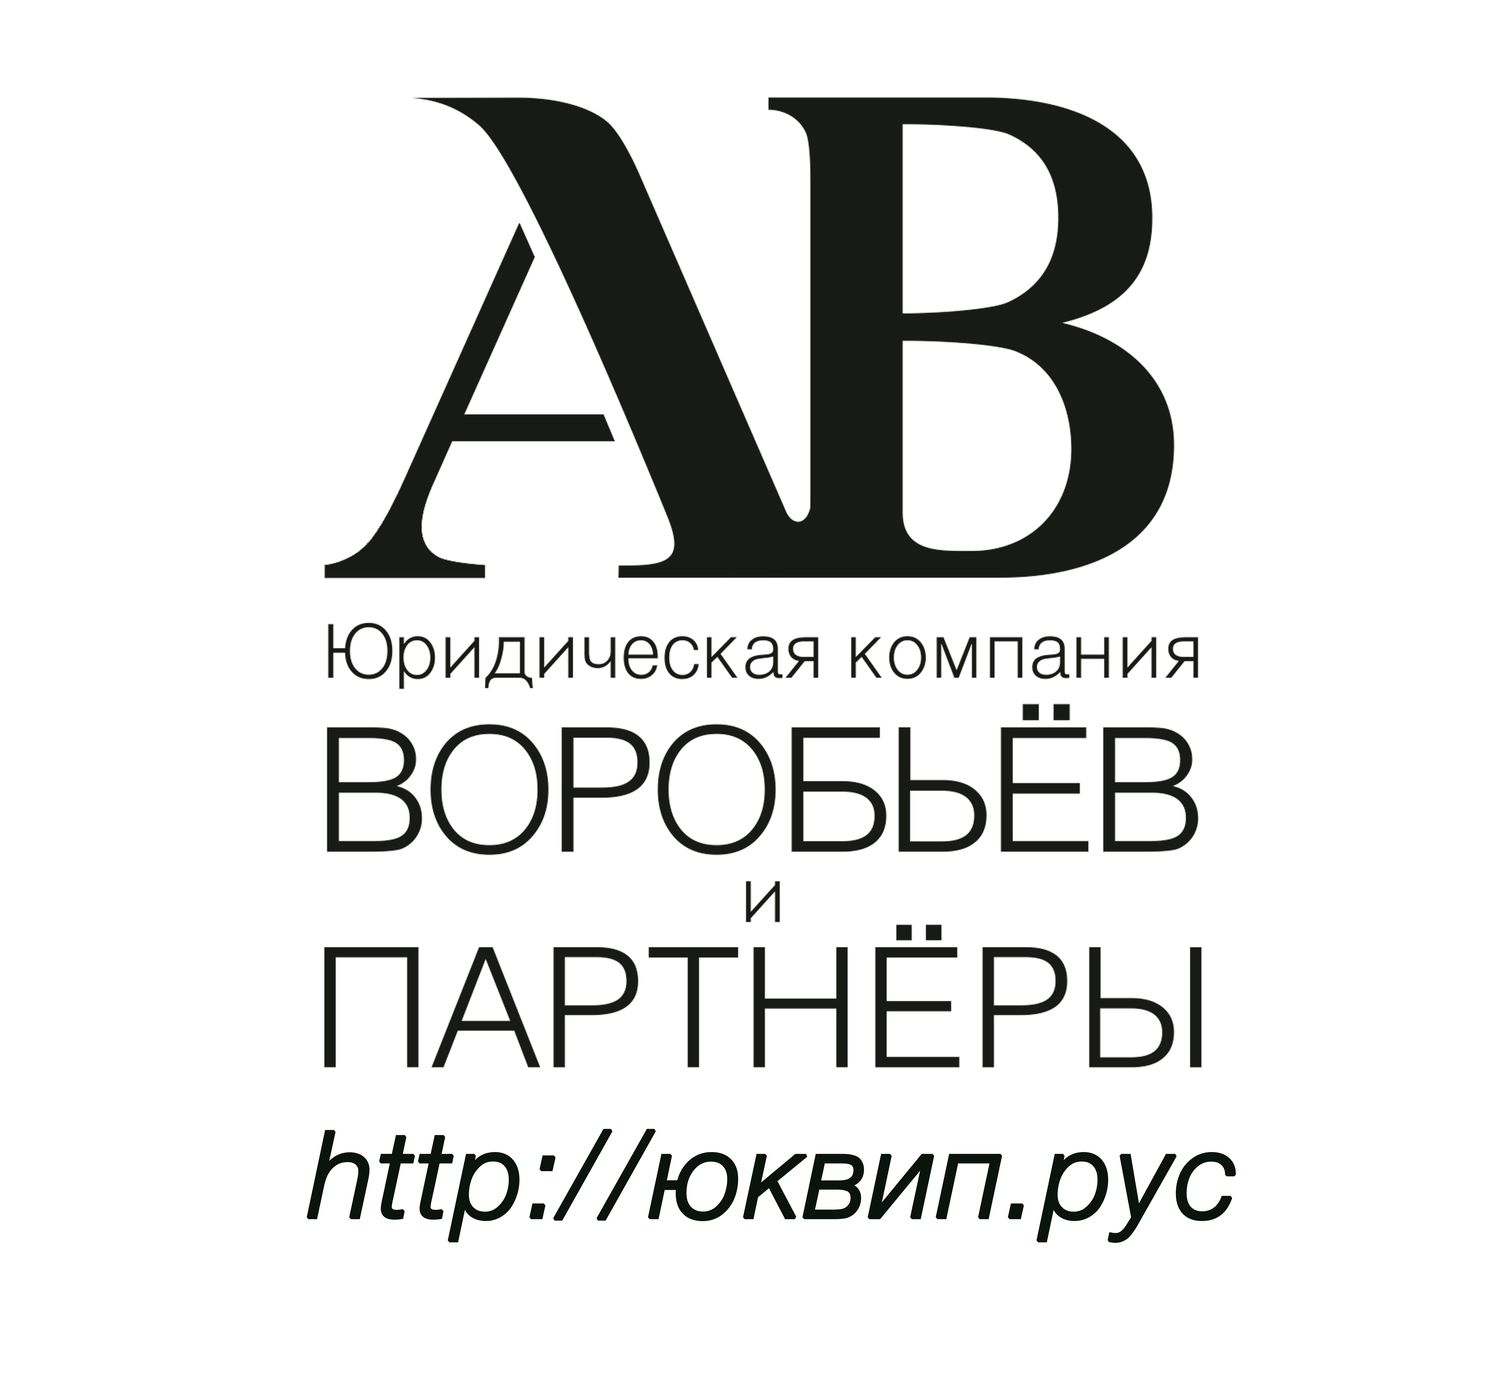 Интернет и право - адвокаты Донецка совет адвокатов Юридическая консультация